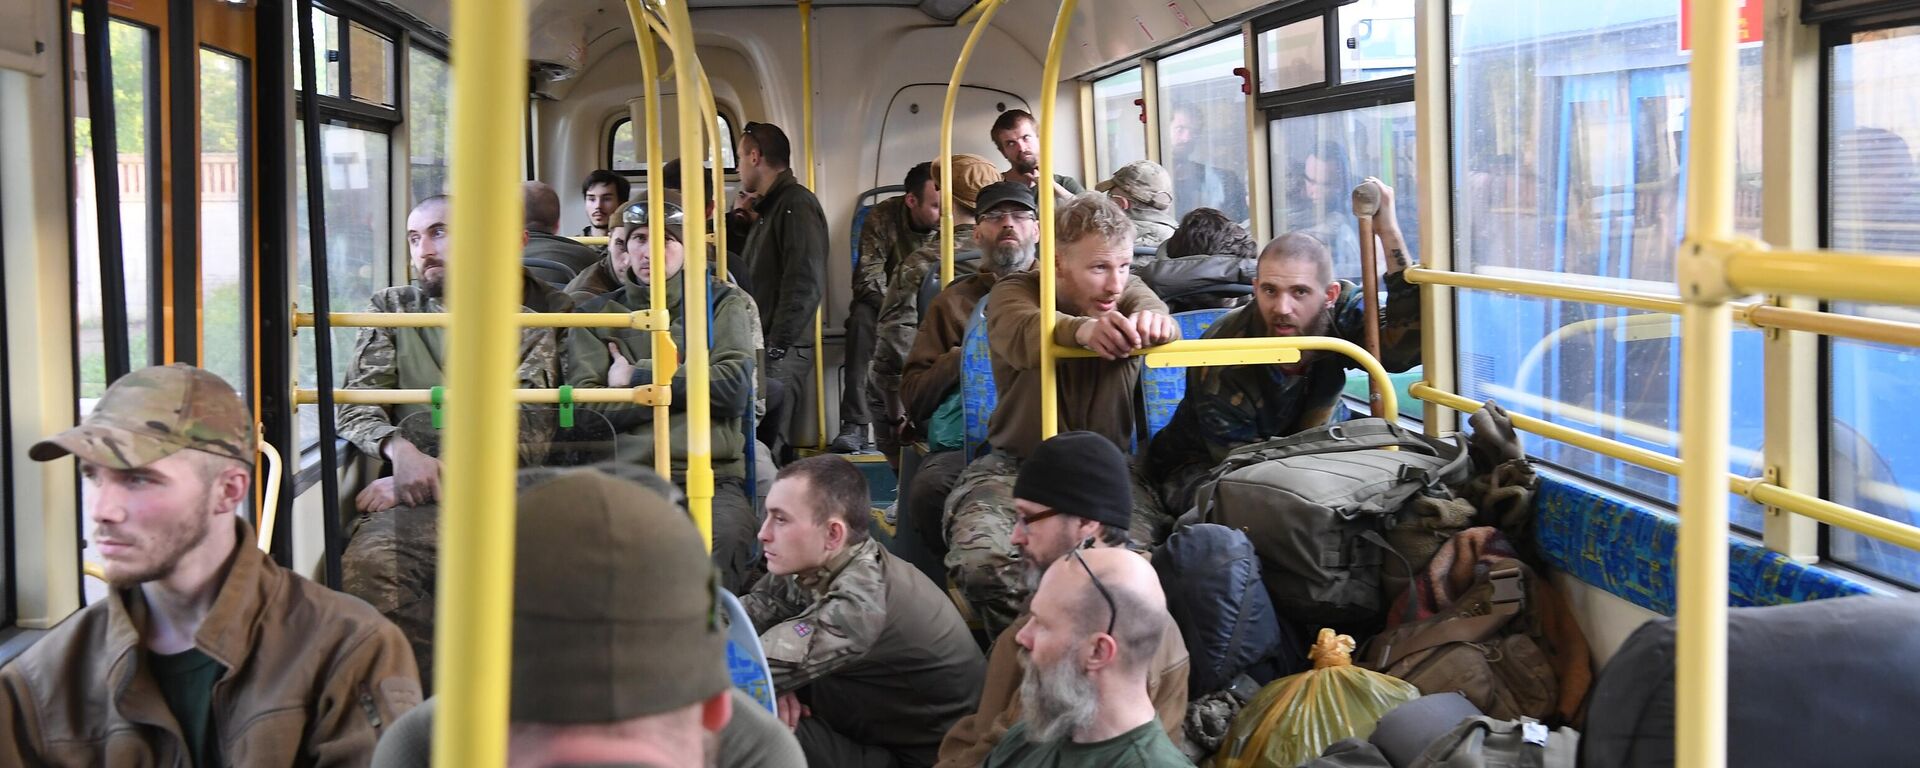 Các quân nhân Ukraina và chiến binh của tiểu đoàn dân tộc chủ nghĩa Azov đã đầu hàng được chở đi trên xe buýt rời khỏi lãnh thổ của nhà máy Azovstal ở Mariupol. - Sputnik Việt Nam, 1920, 18.05.2022